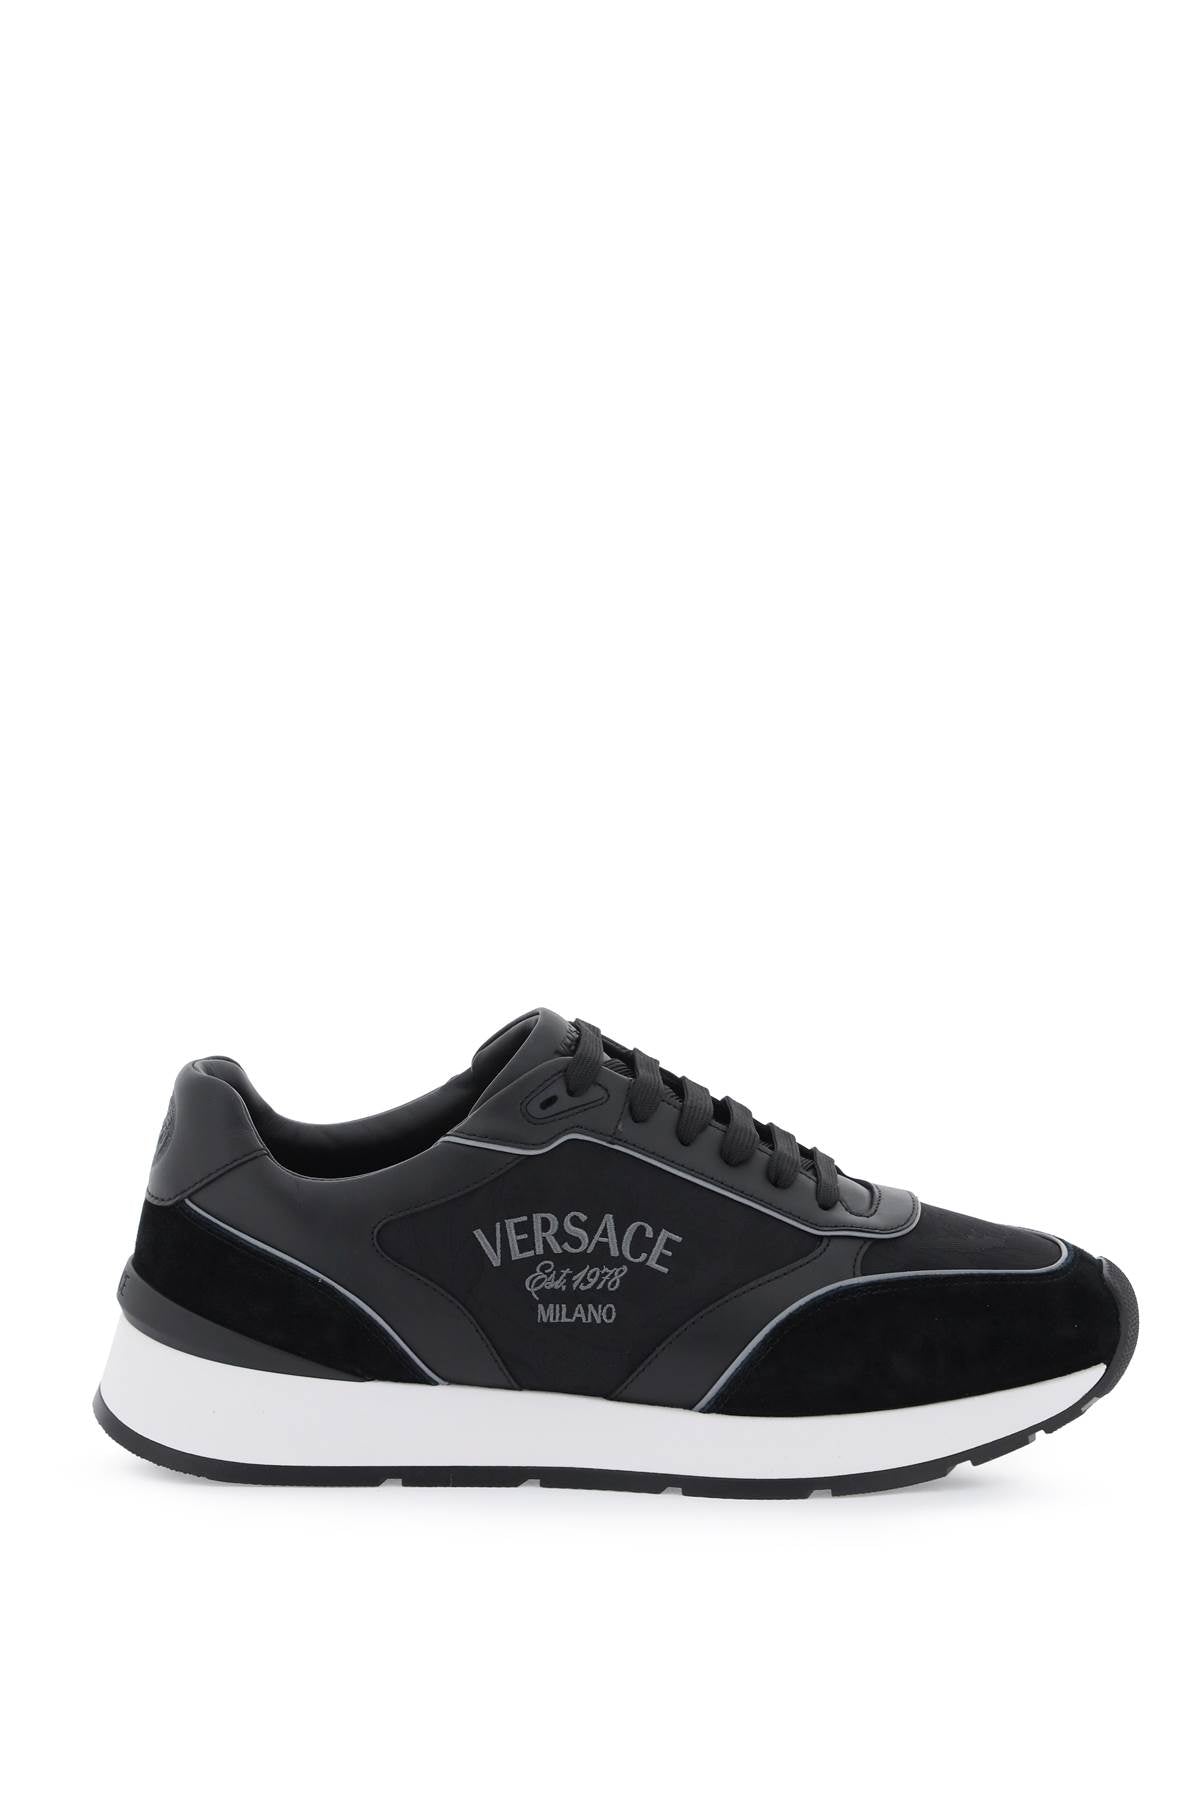 Versace sneakers versace milano-0